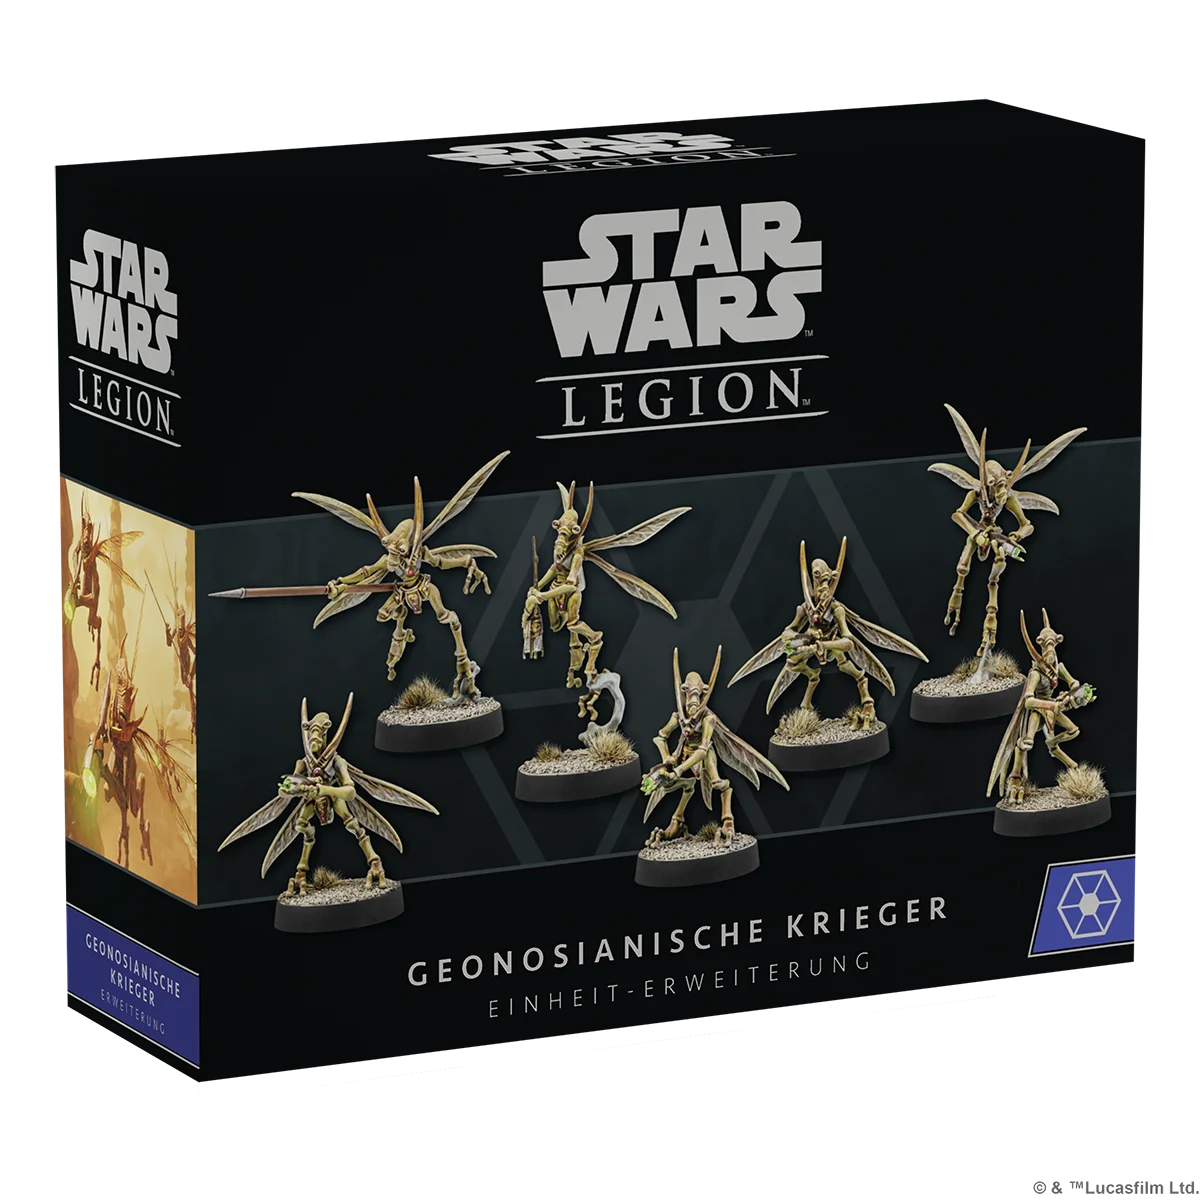 Star Wars: Legion – Geonosianische Krieger